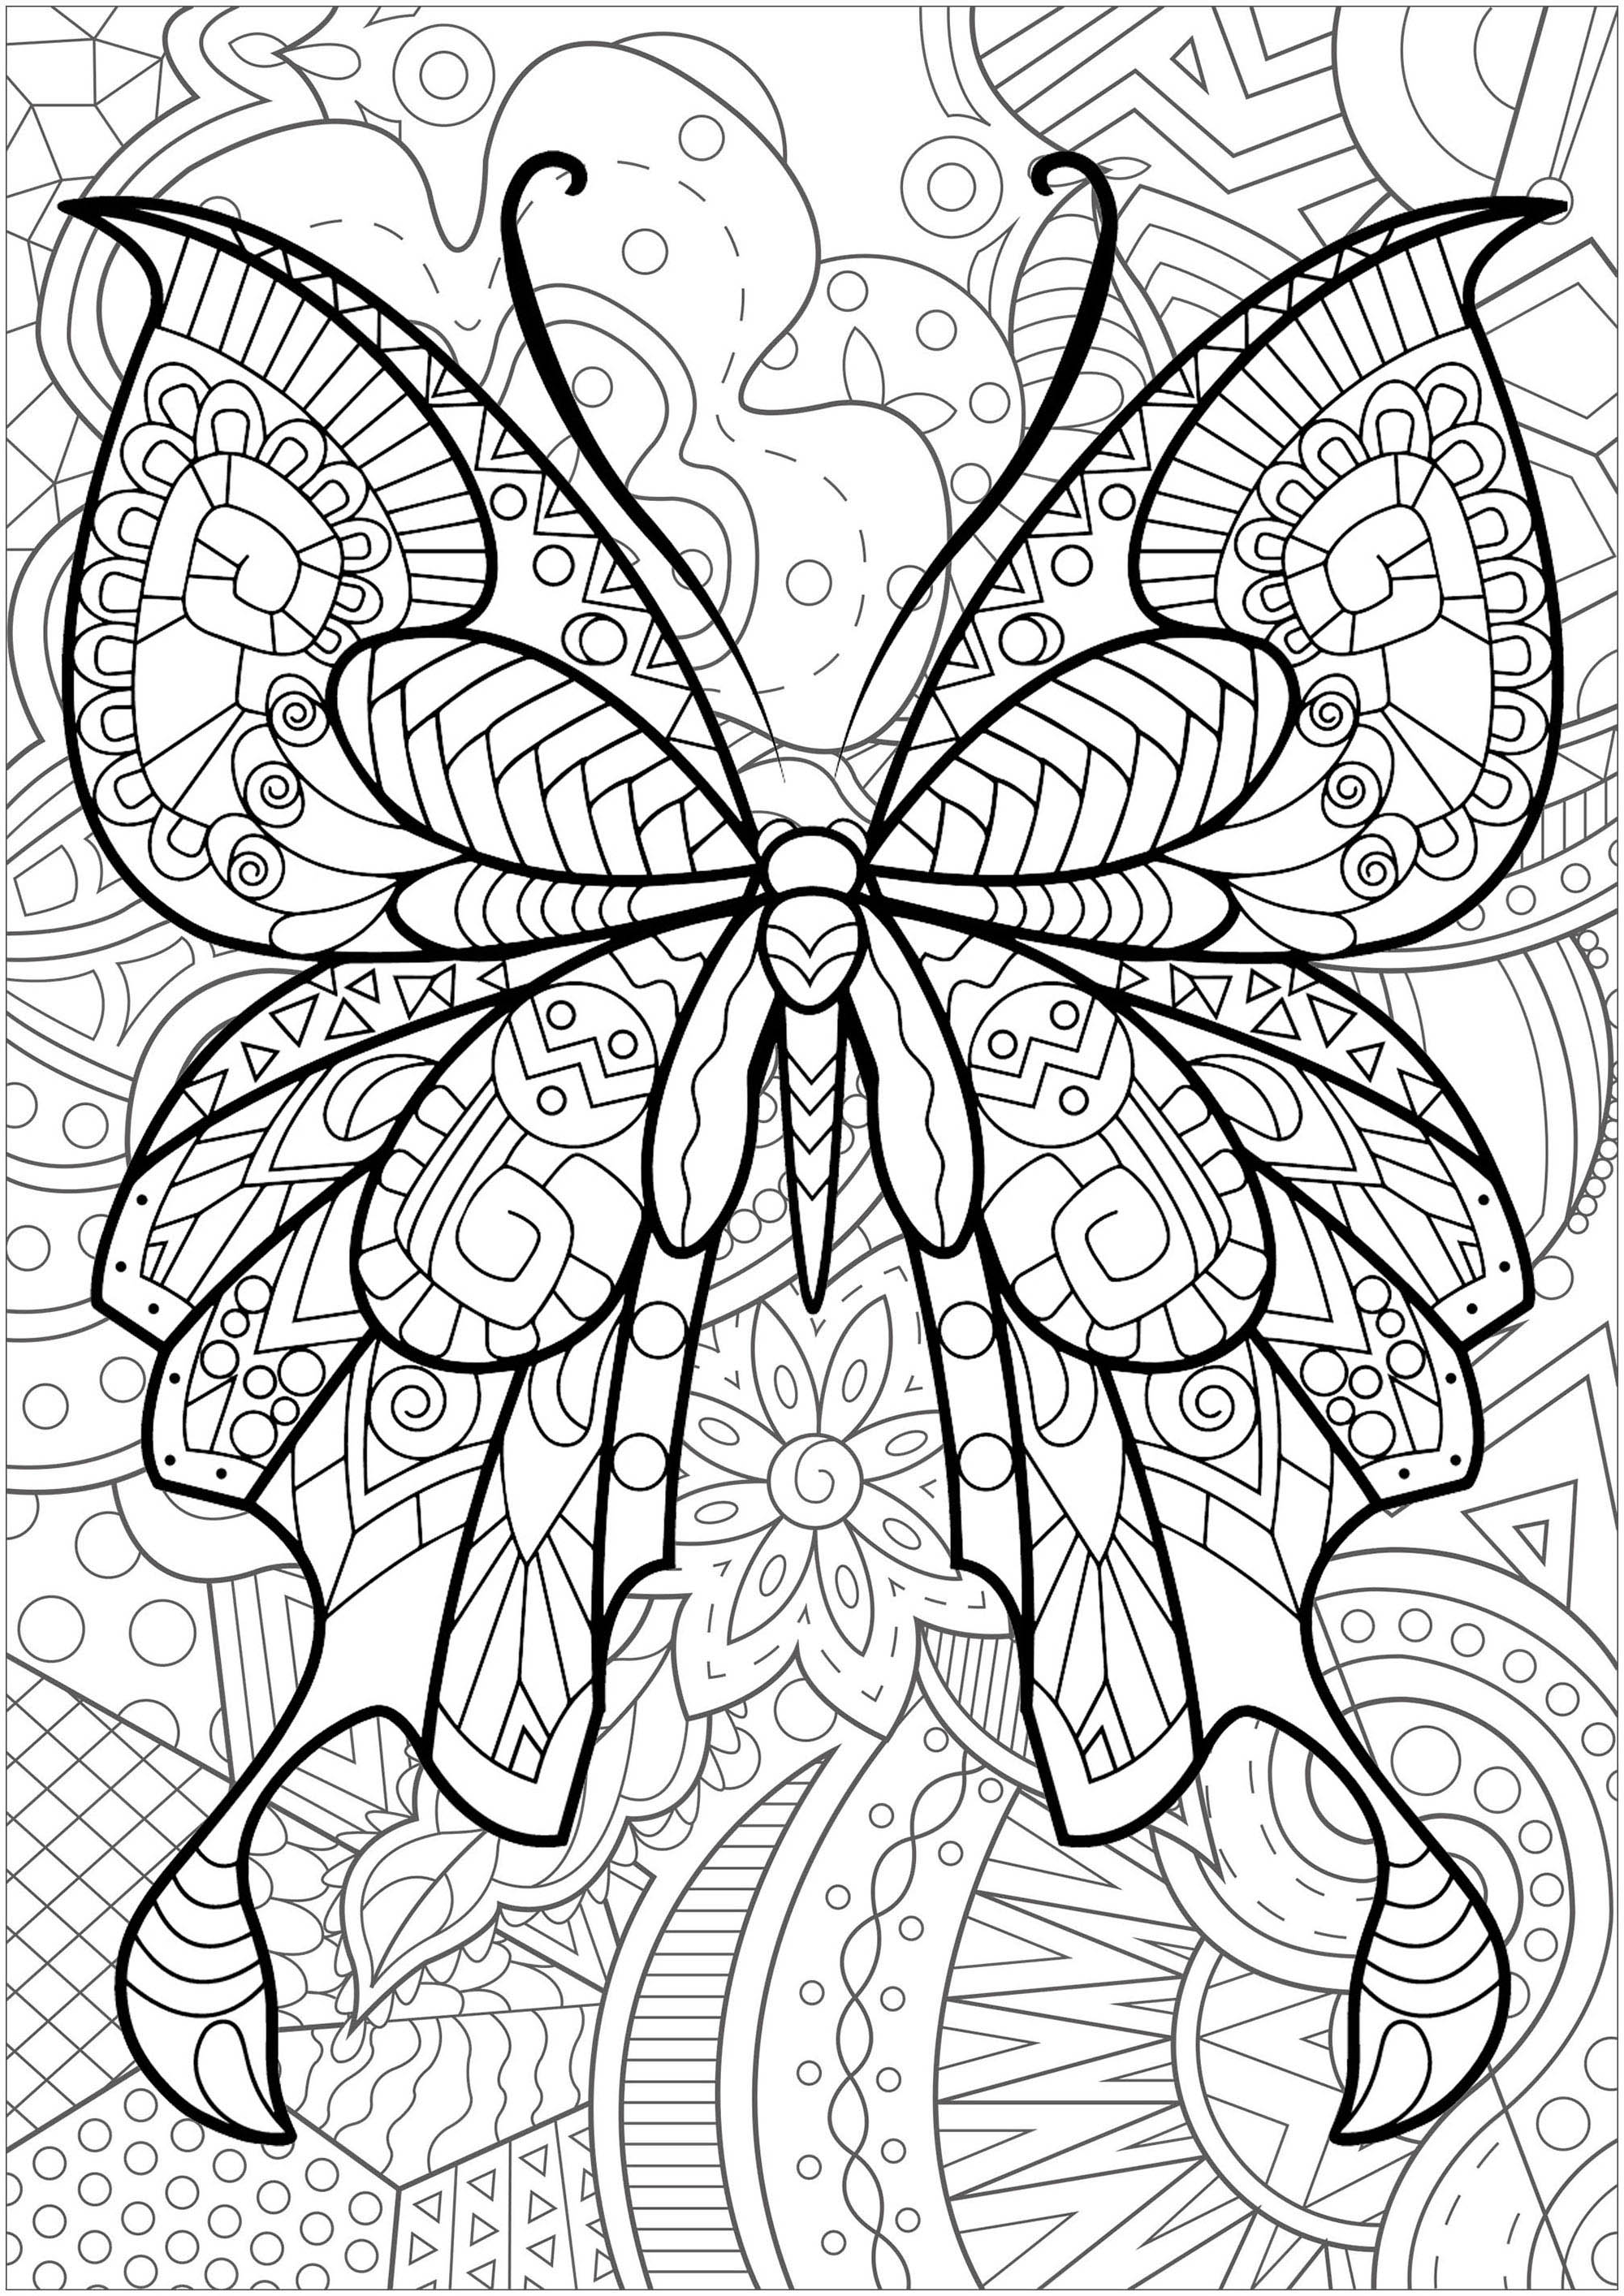 Disegni da Colorare per Adulti : Farfalle e insetti - 2